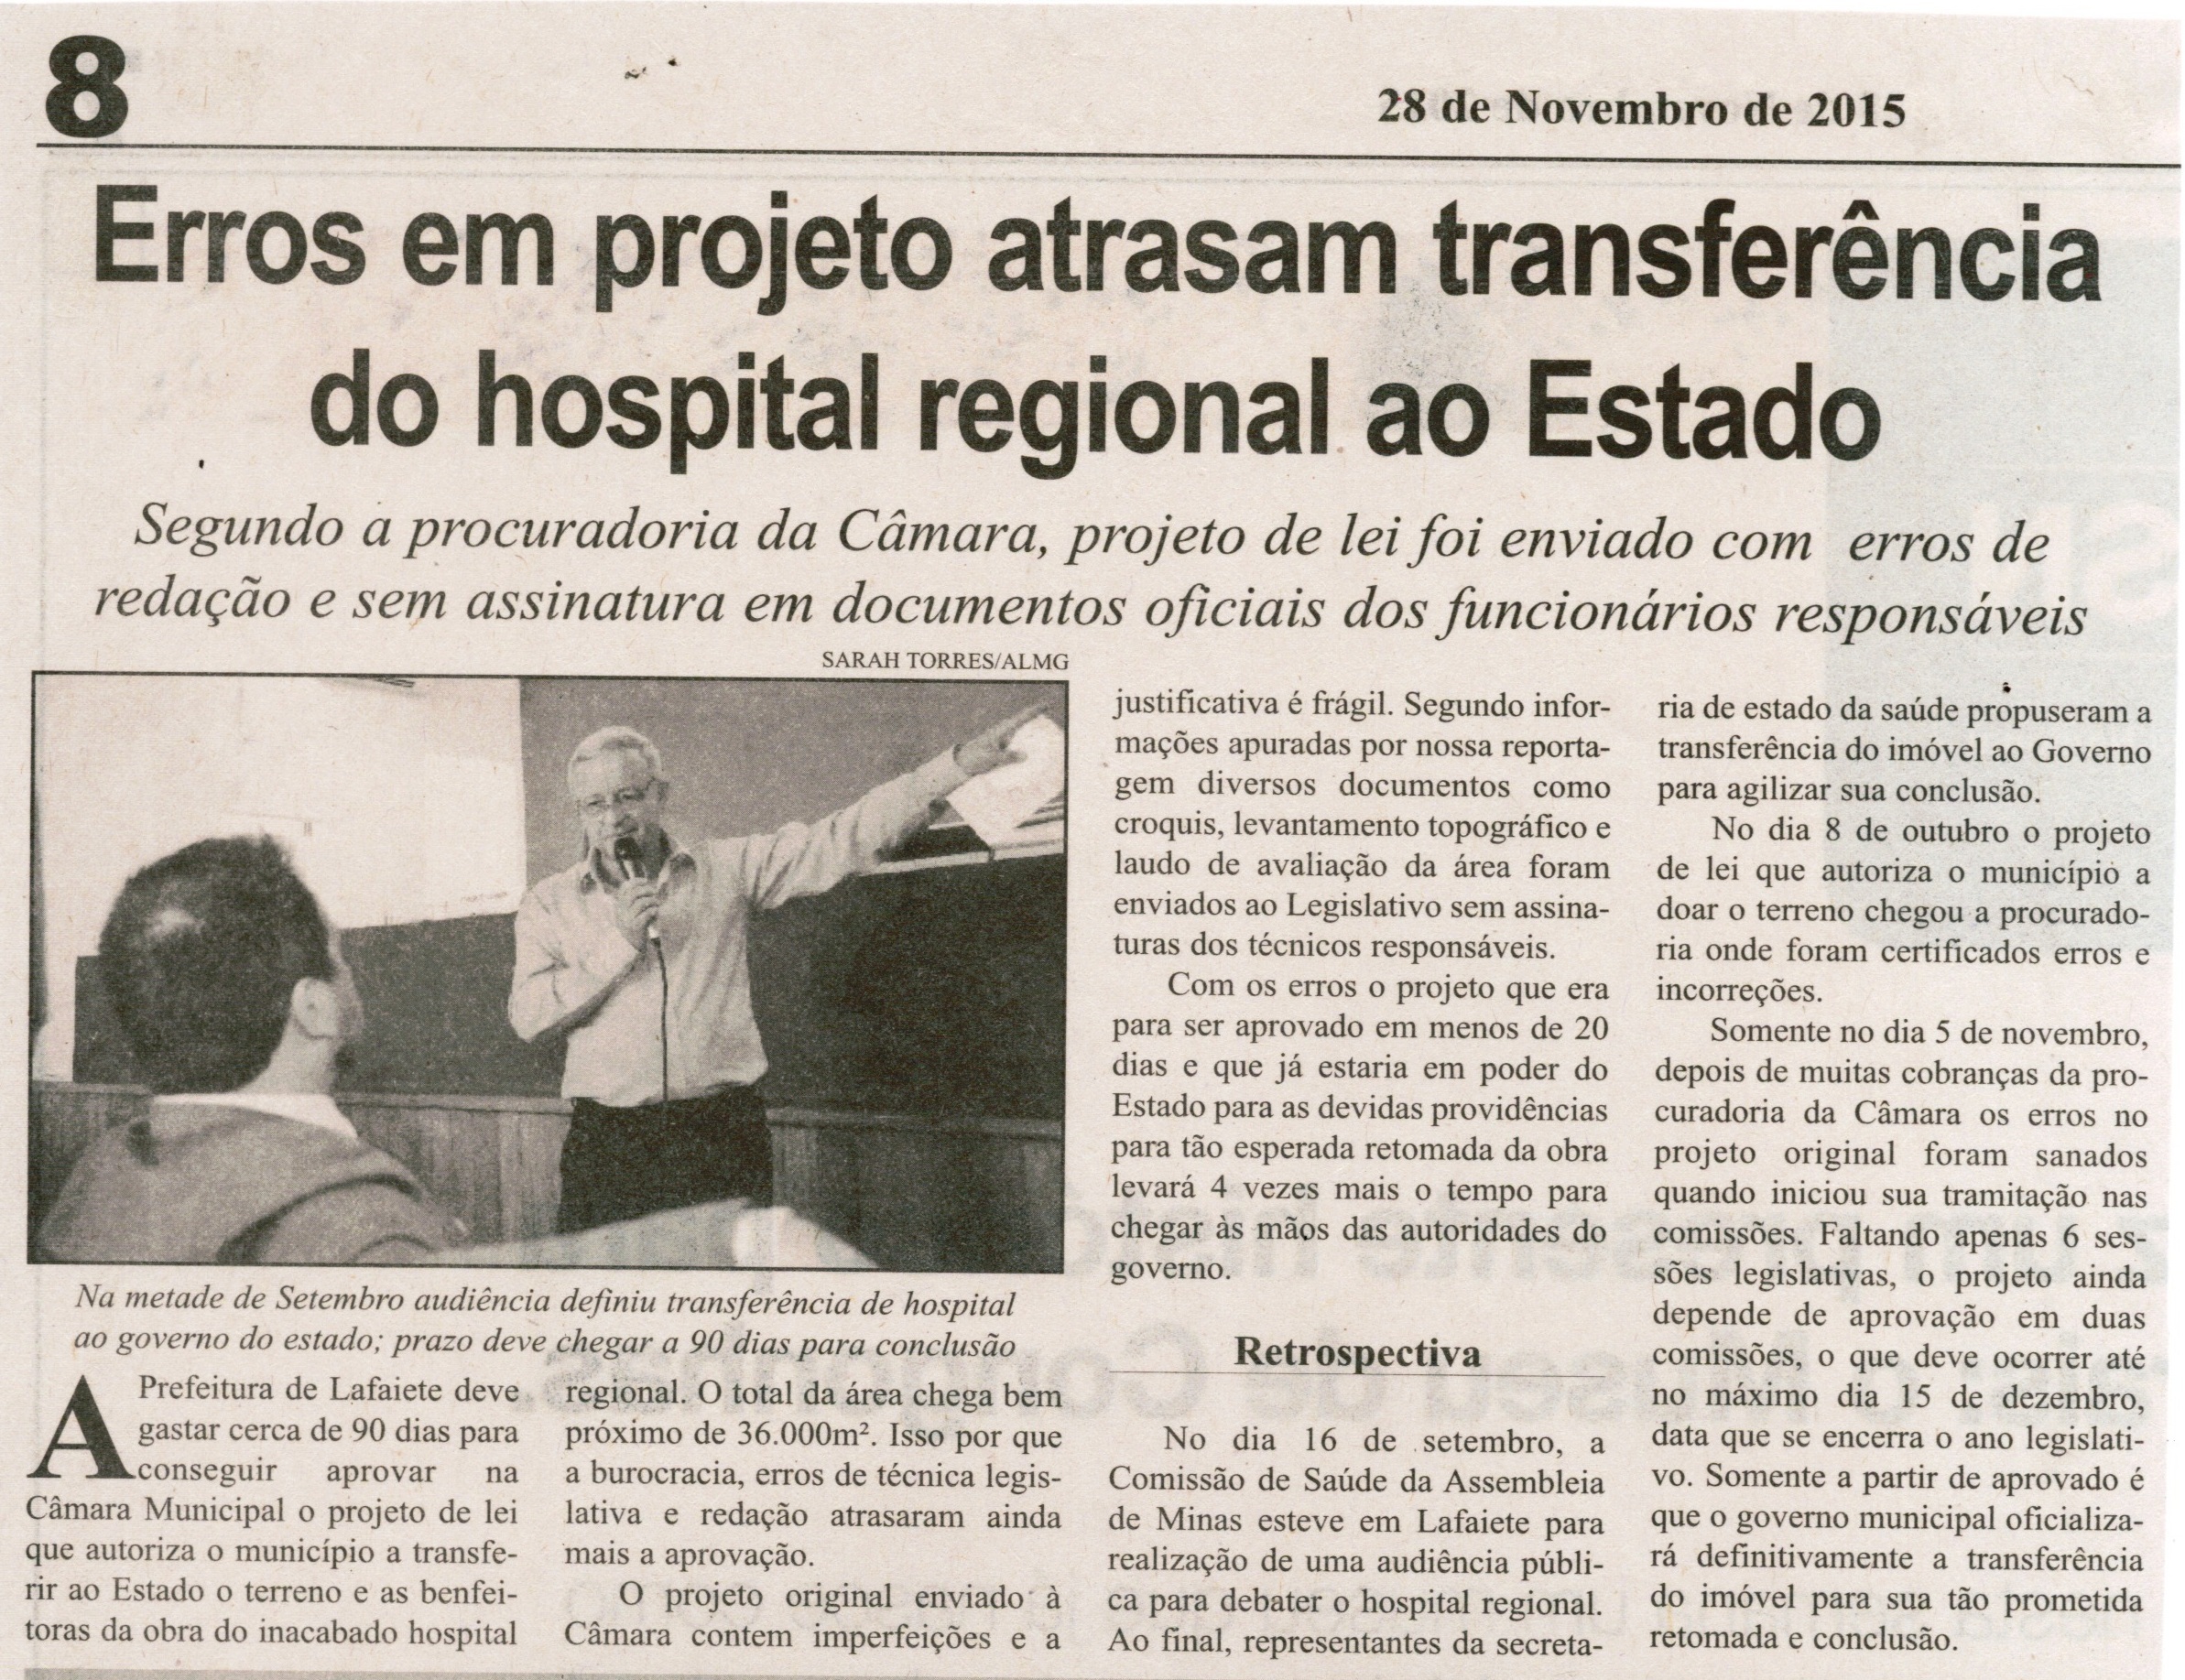 Erros em projeto atrasam transferência do hospital regional do Estado. Correio de Minas, Conselheiro Lafaiete, 28 nov 2015, 420ª ed., p. 8.